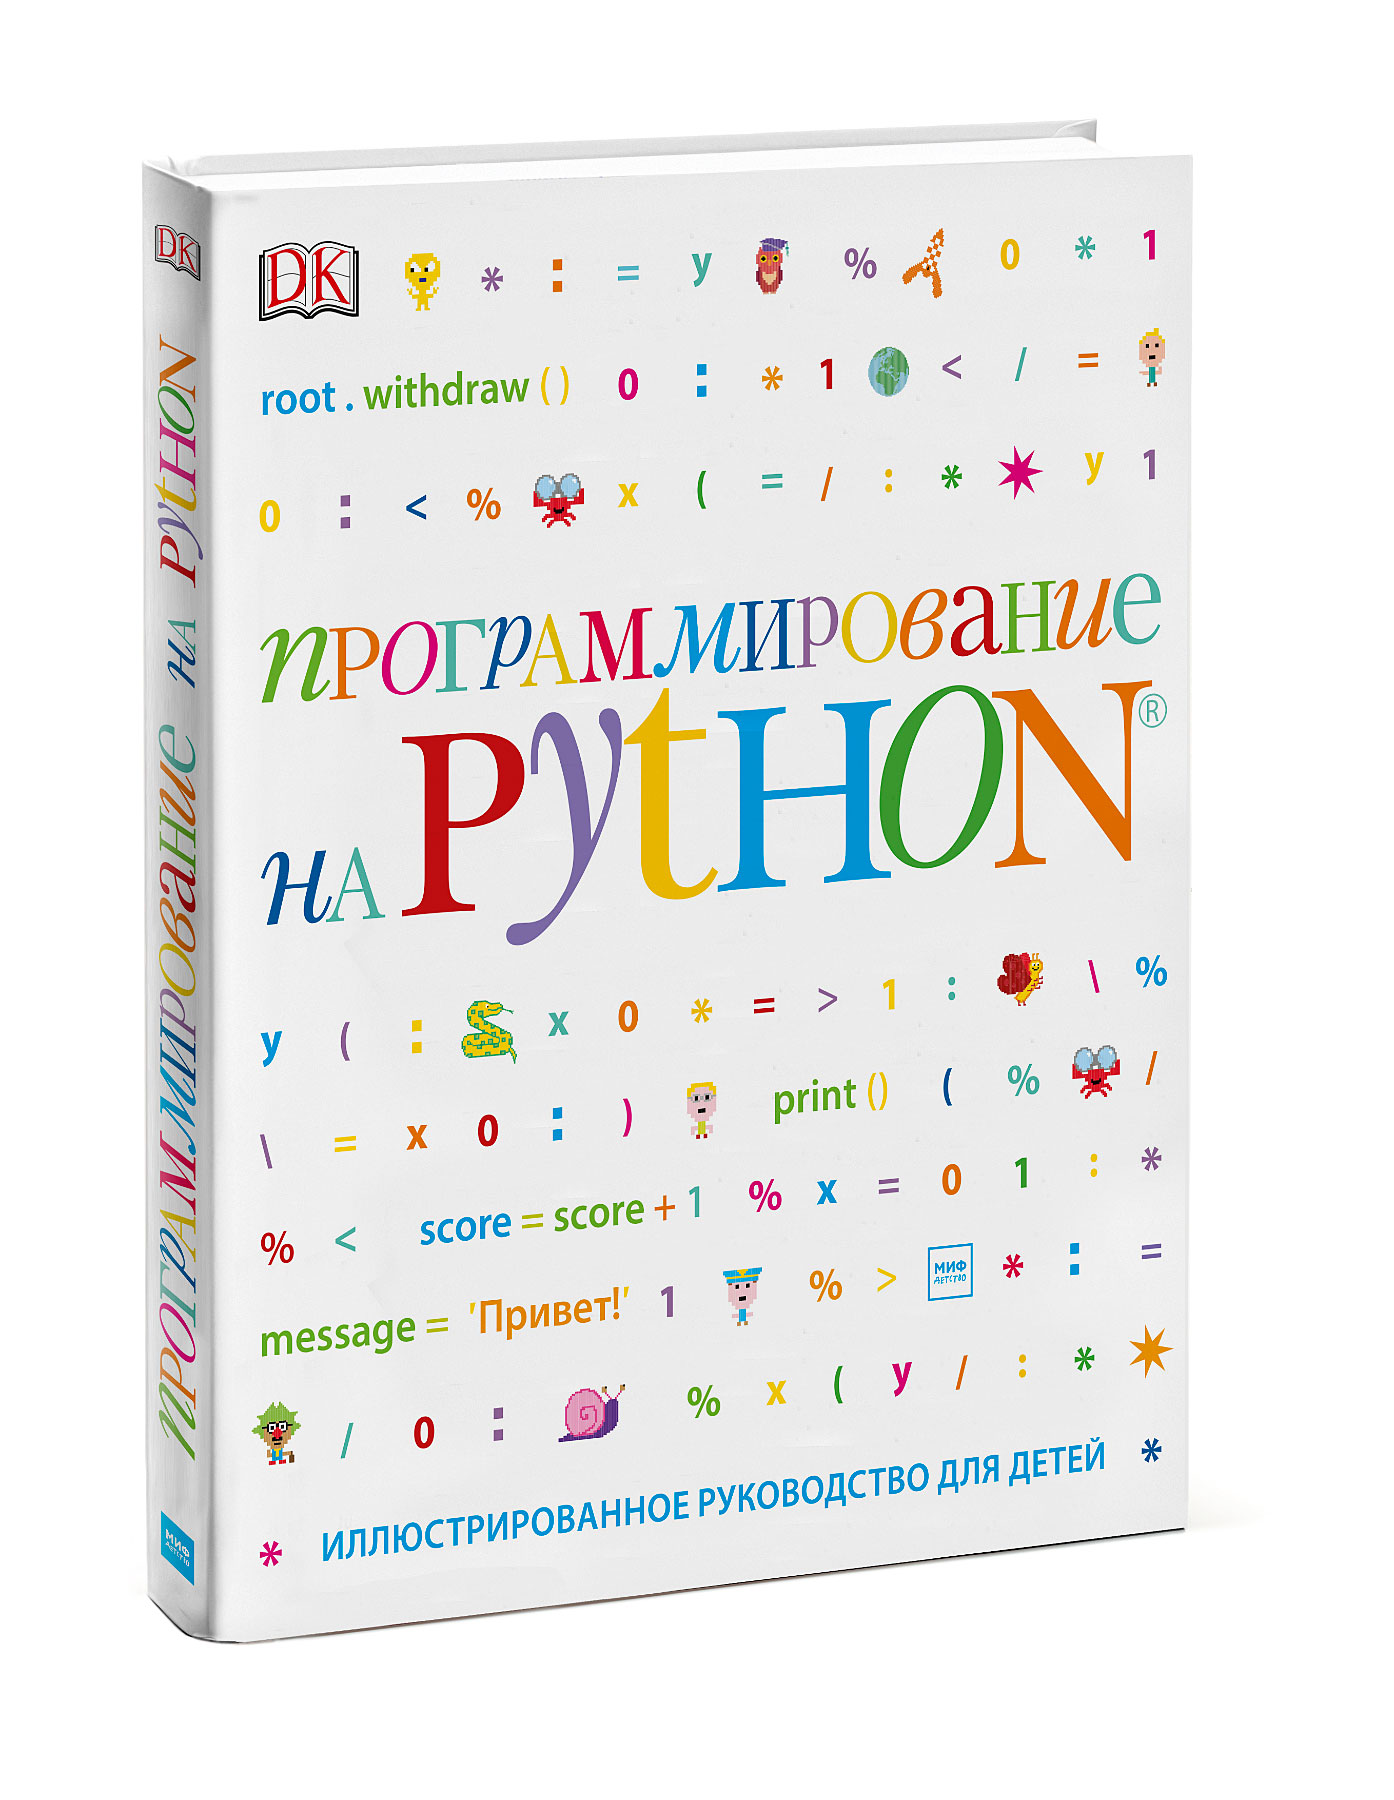   Python.    